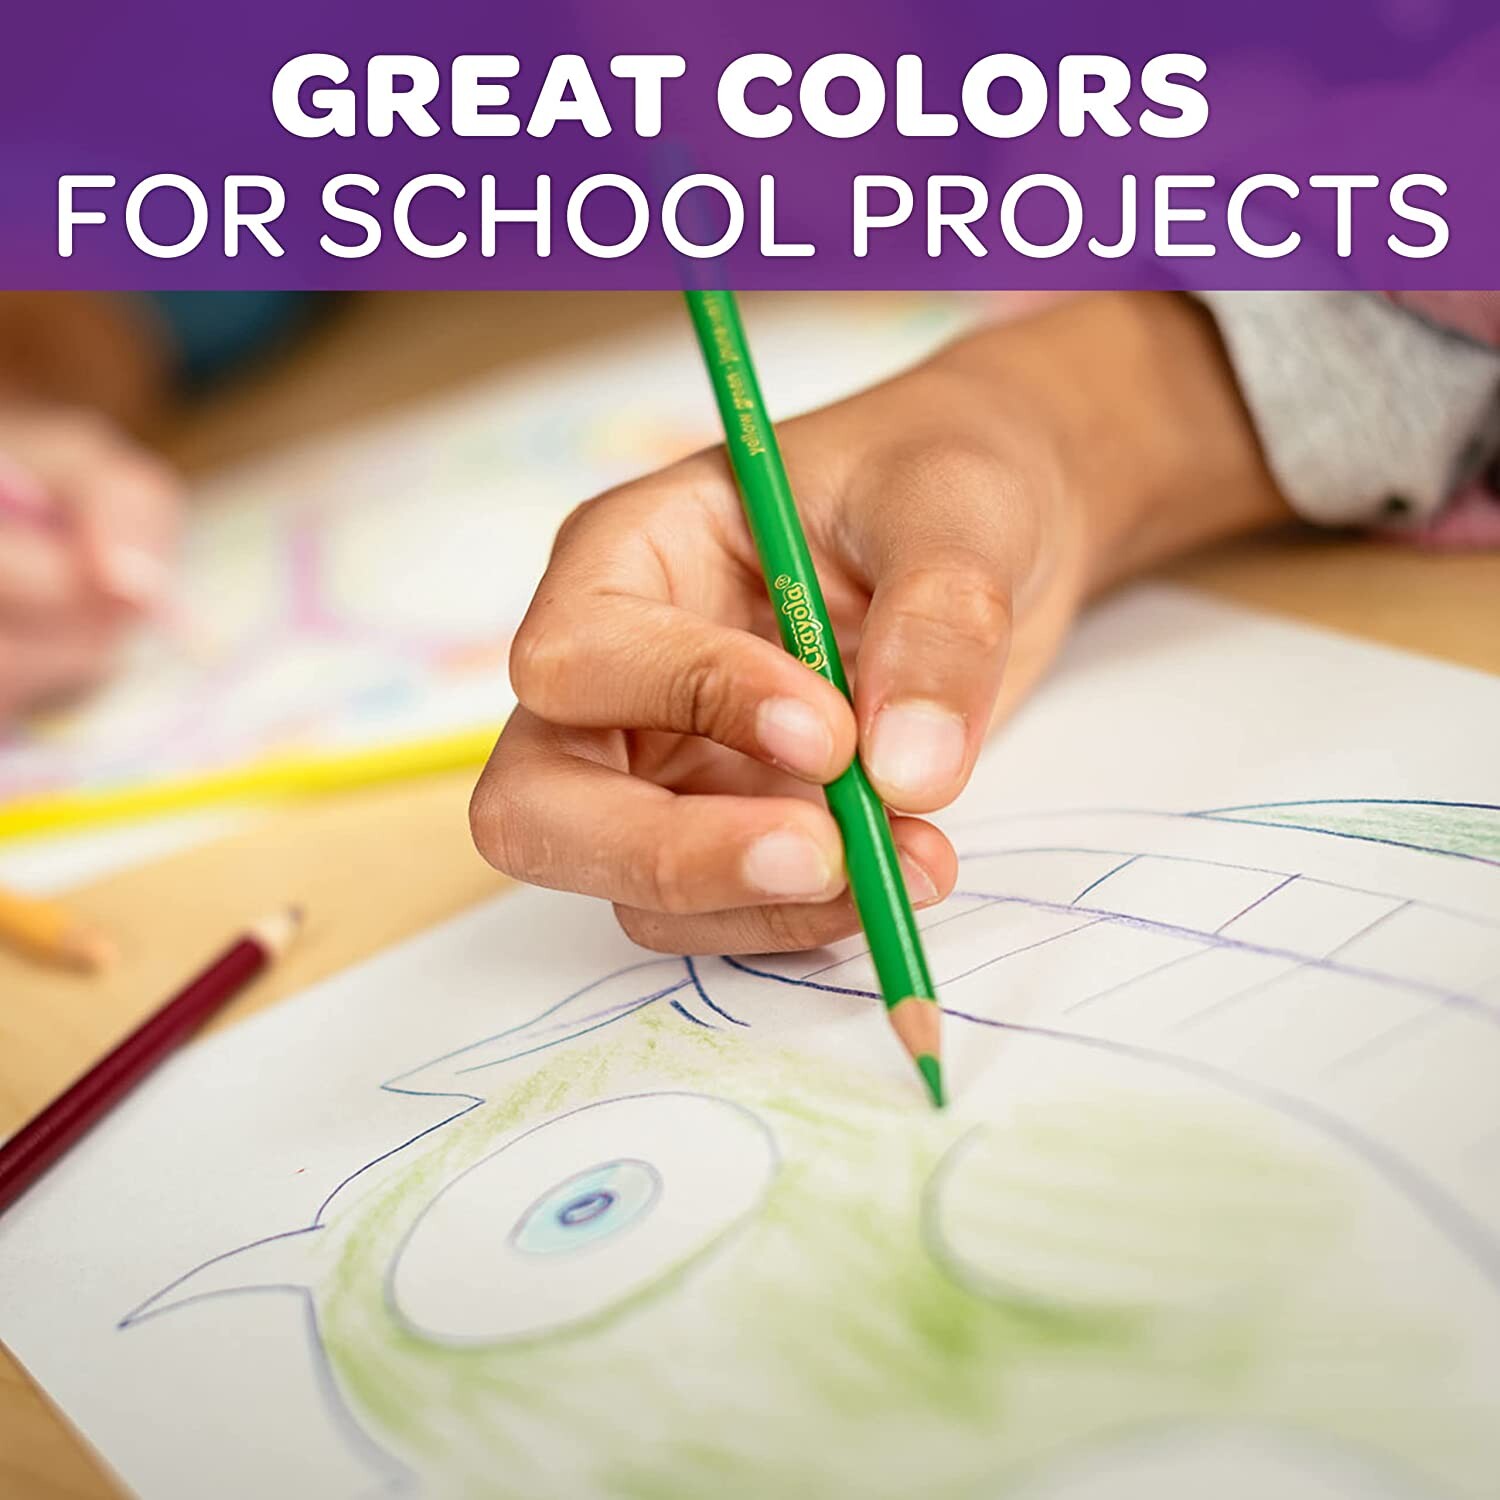 Set Pastelli Colorati 50 Pz. Matite In Legno Per Colorare Bambini Scuola  Disegno 